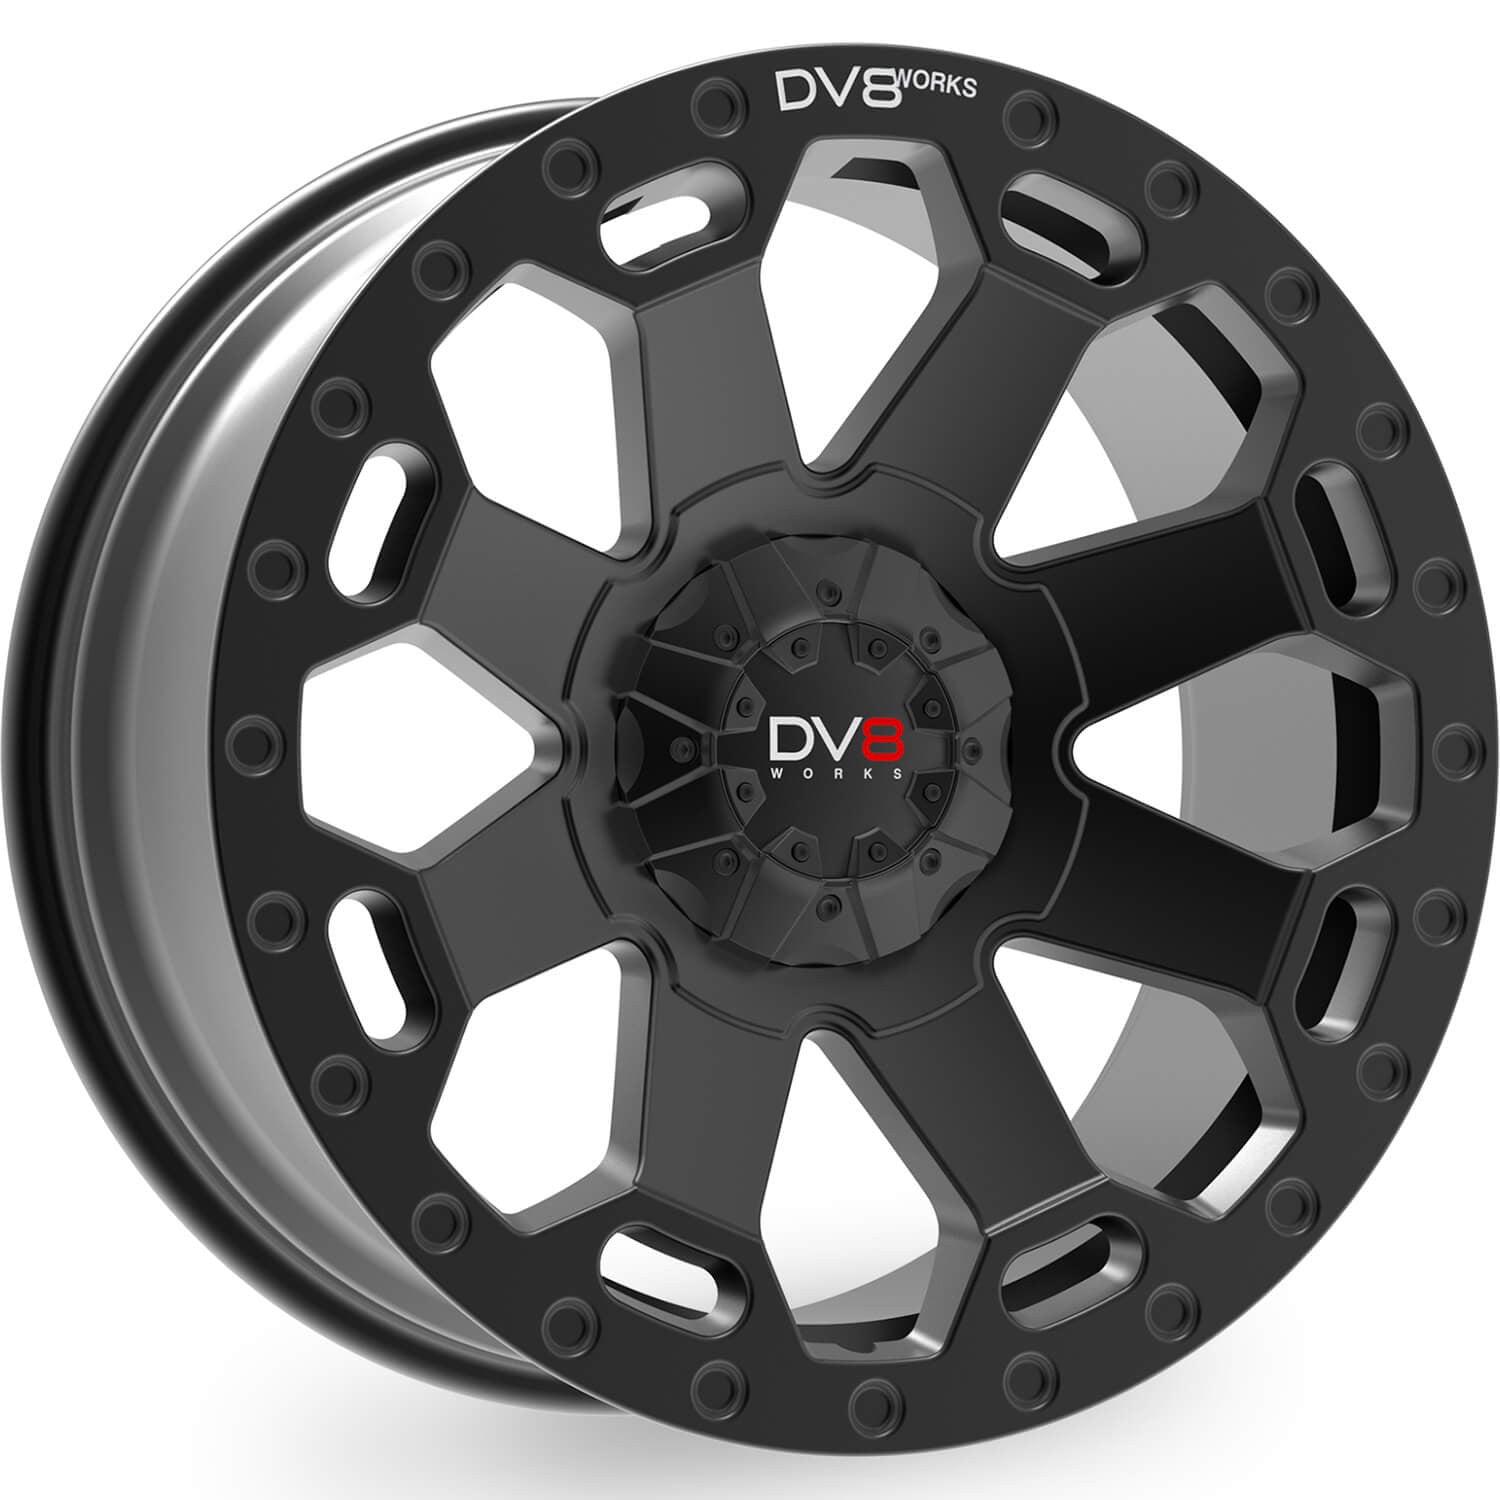 DV8 Works Concept Black 20" Alloy Wheel - Next-Gen Ranger UK